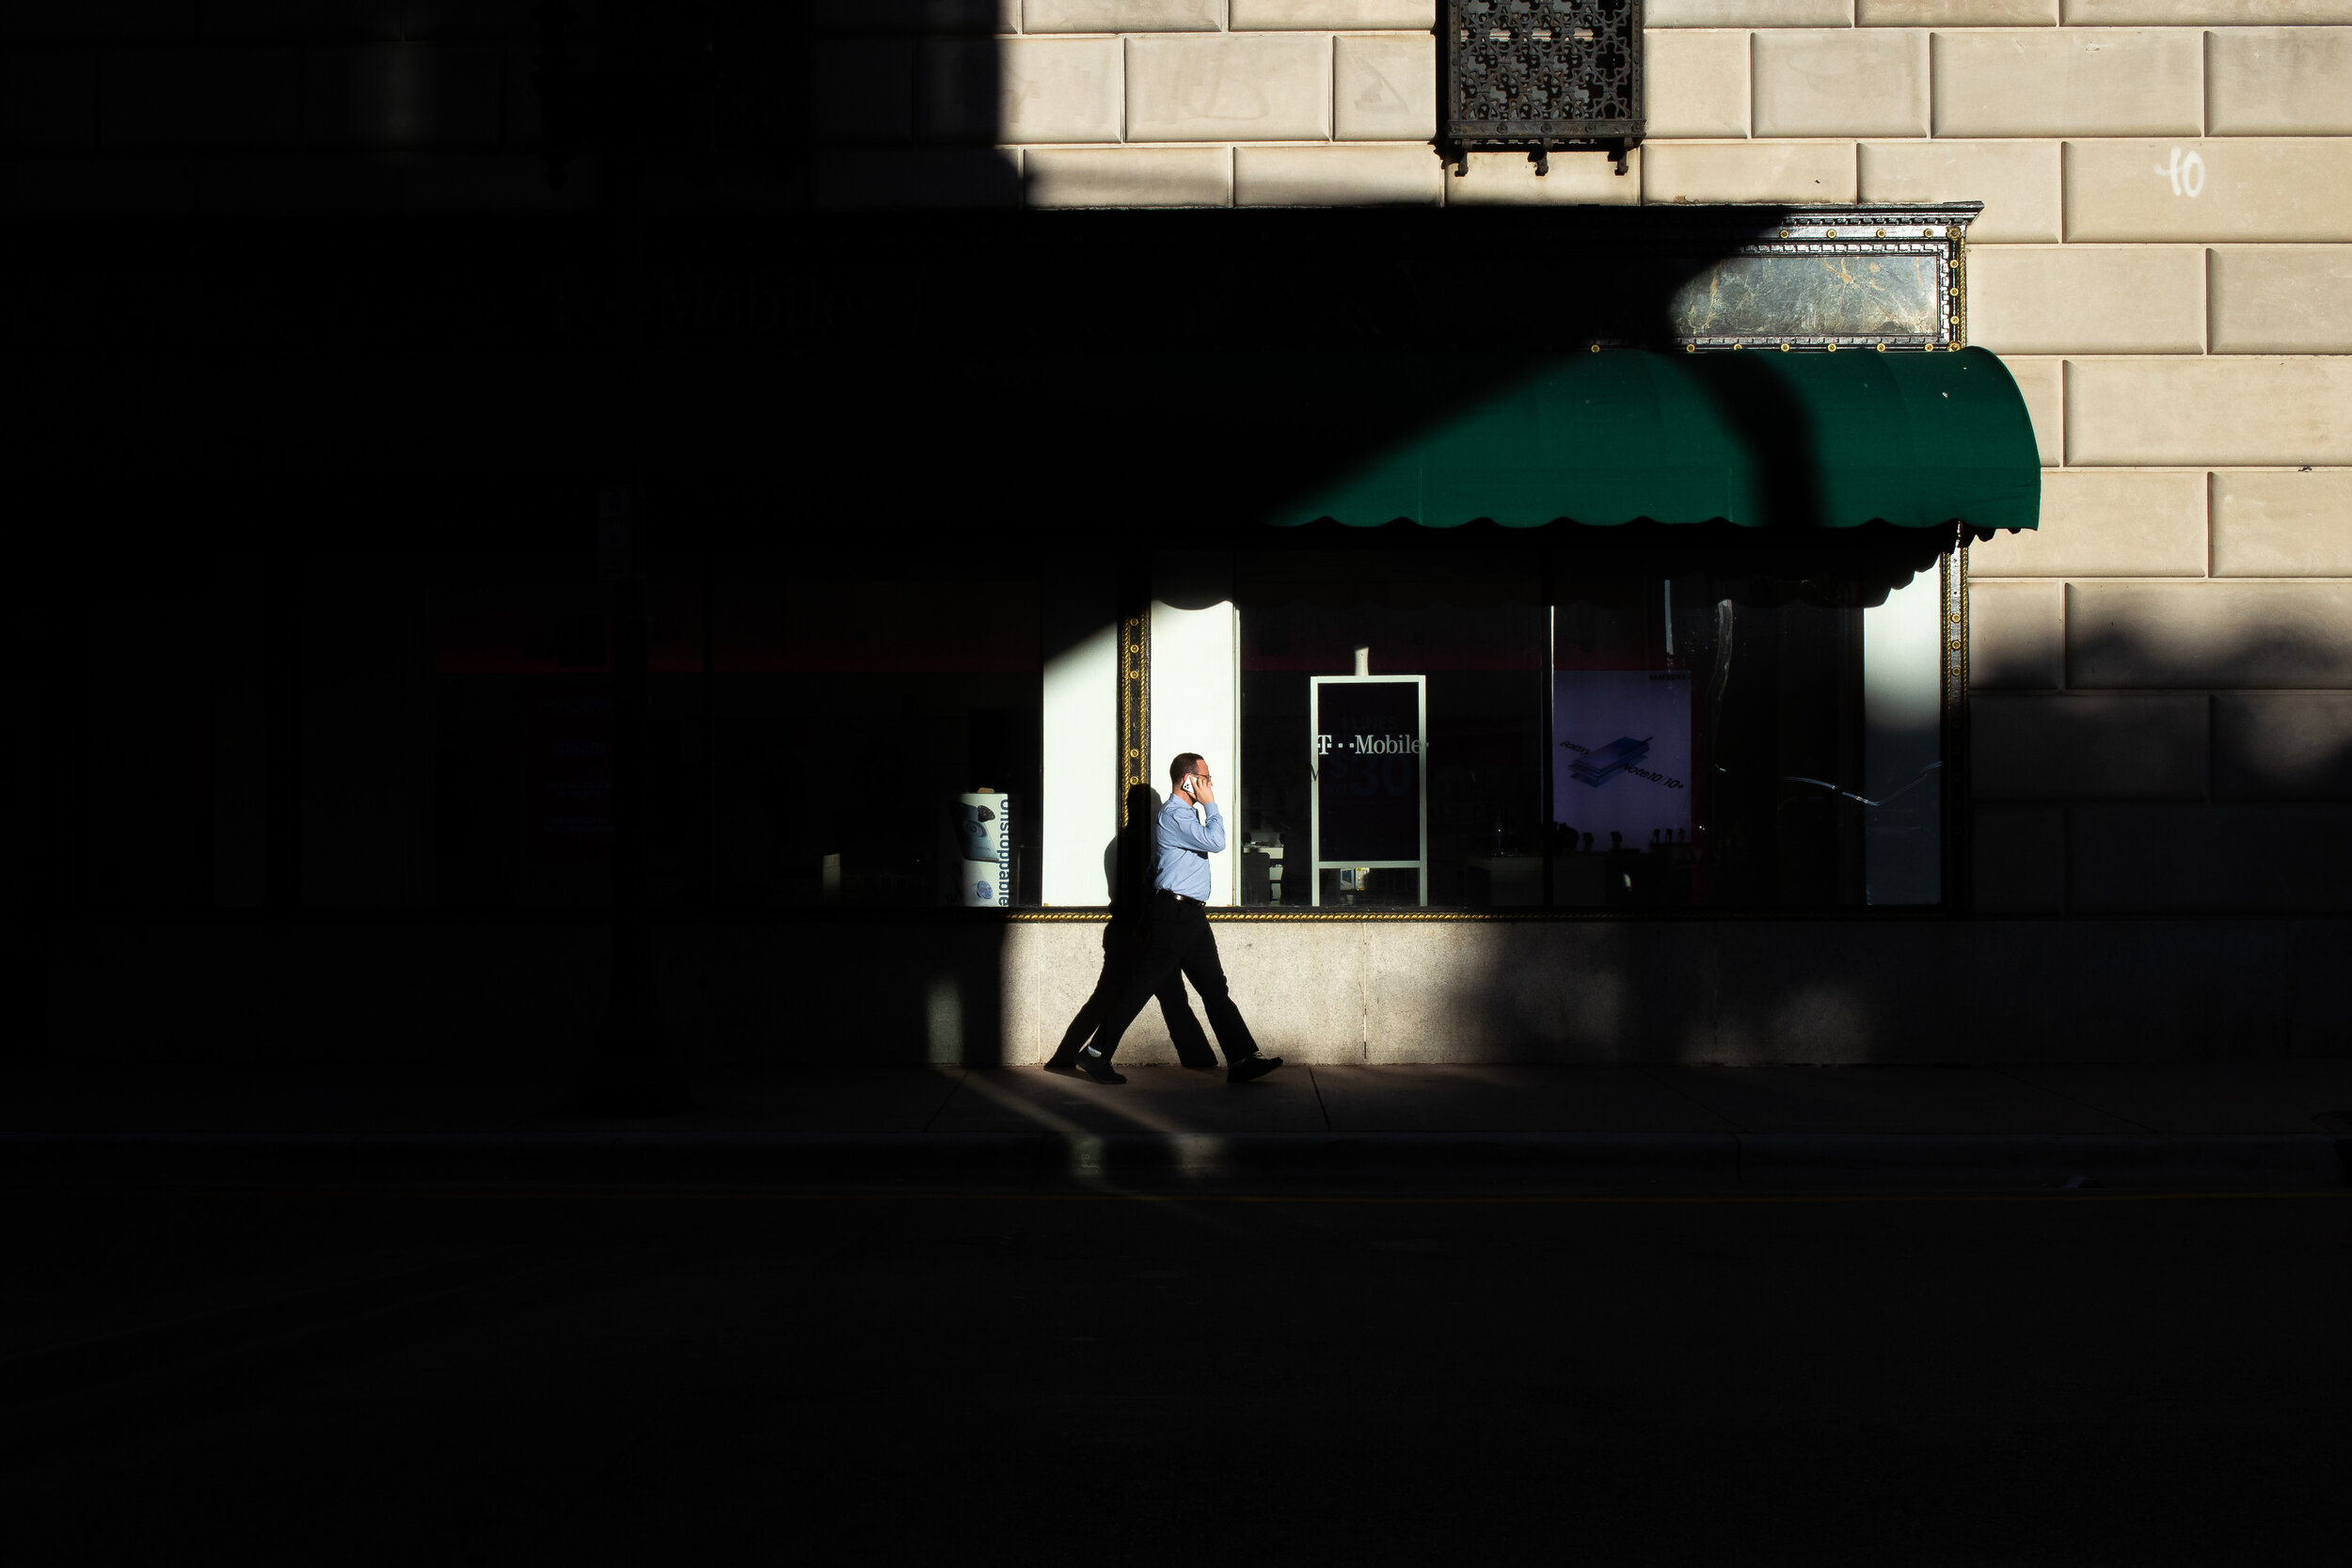 Man walking by Ingraham building-.jpg